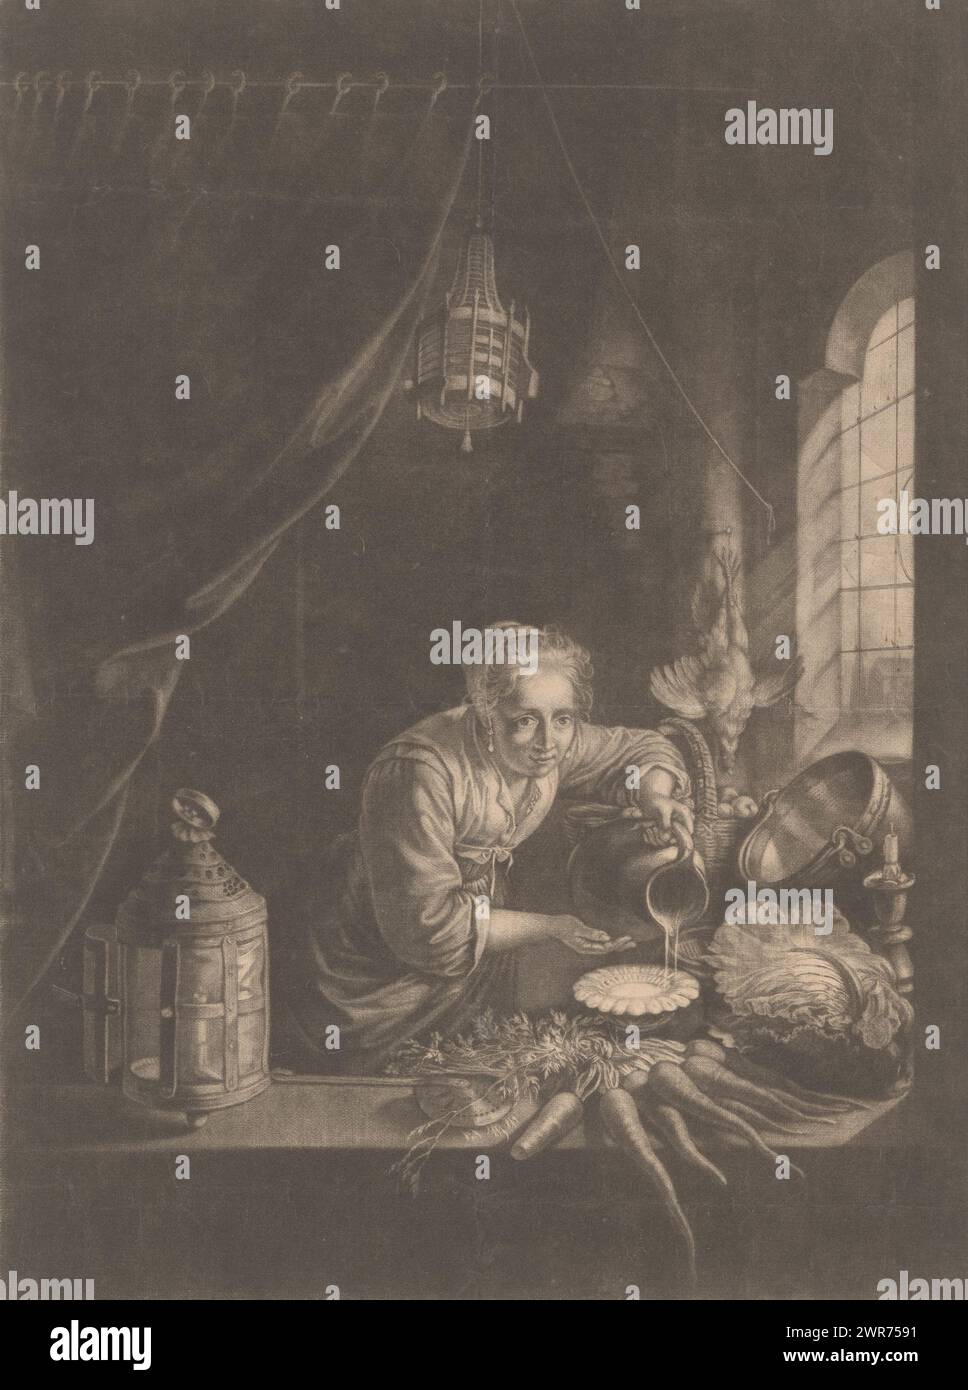 Junge Frau, die Wasser aus einem Krug gießt, Druckerei: Isaac Sarrabat, nach Malerei von Gerard Dou, 1677 - 1701, Papier, Höhe 370 mm x Breite 264 mm, Druck Stockfoto